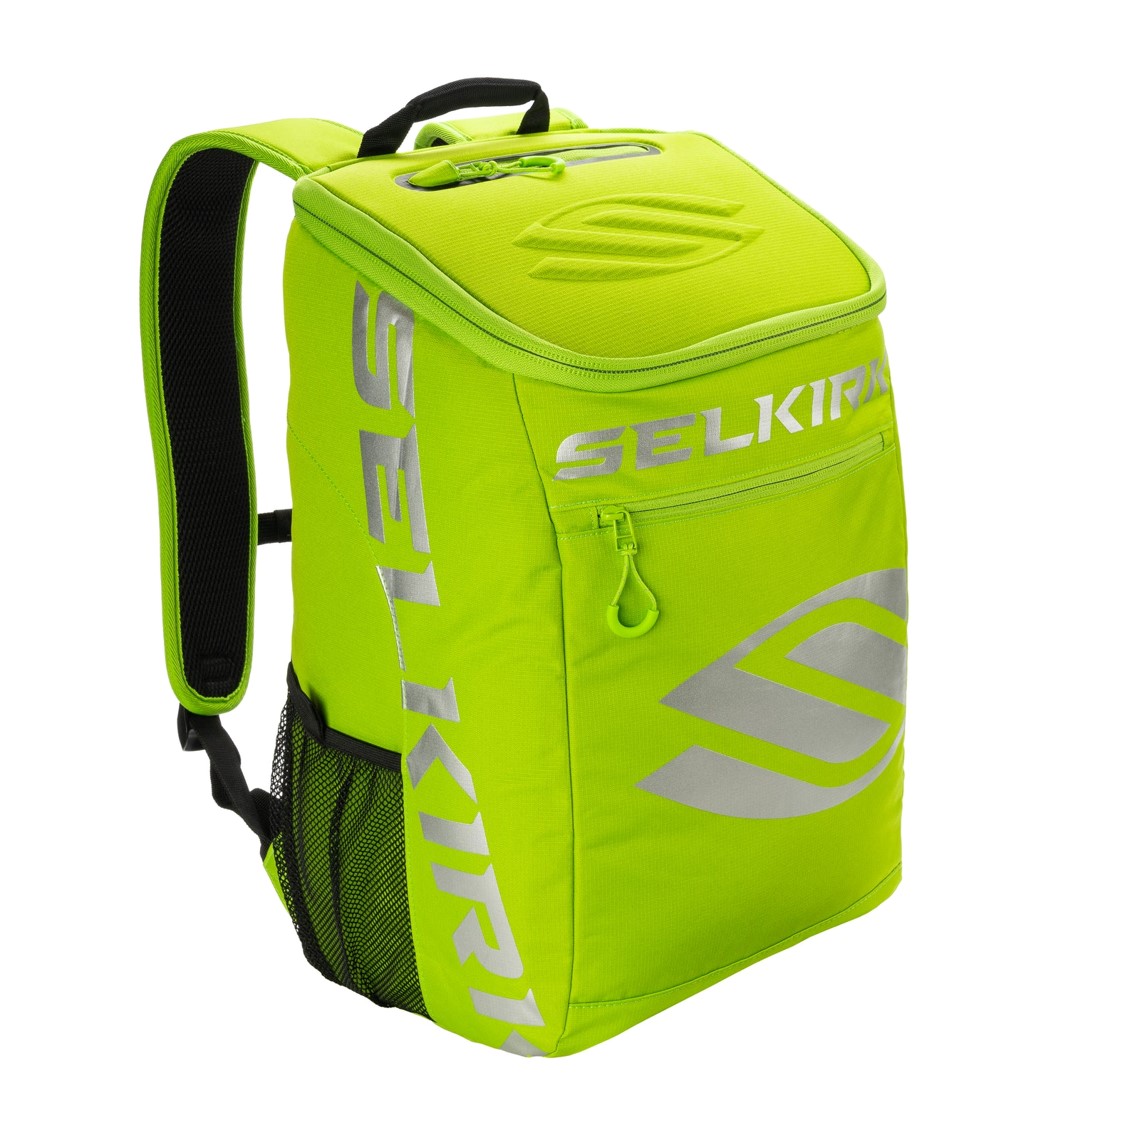 셀커크 코어라인 팀 백팩(SELKIRK Core Line Team  Backpack)